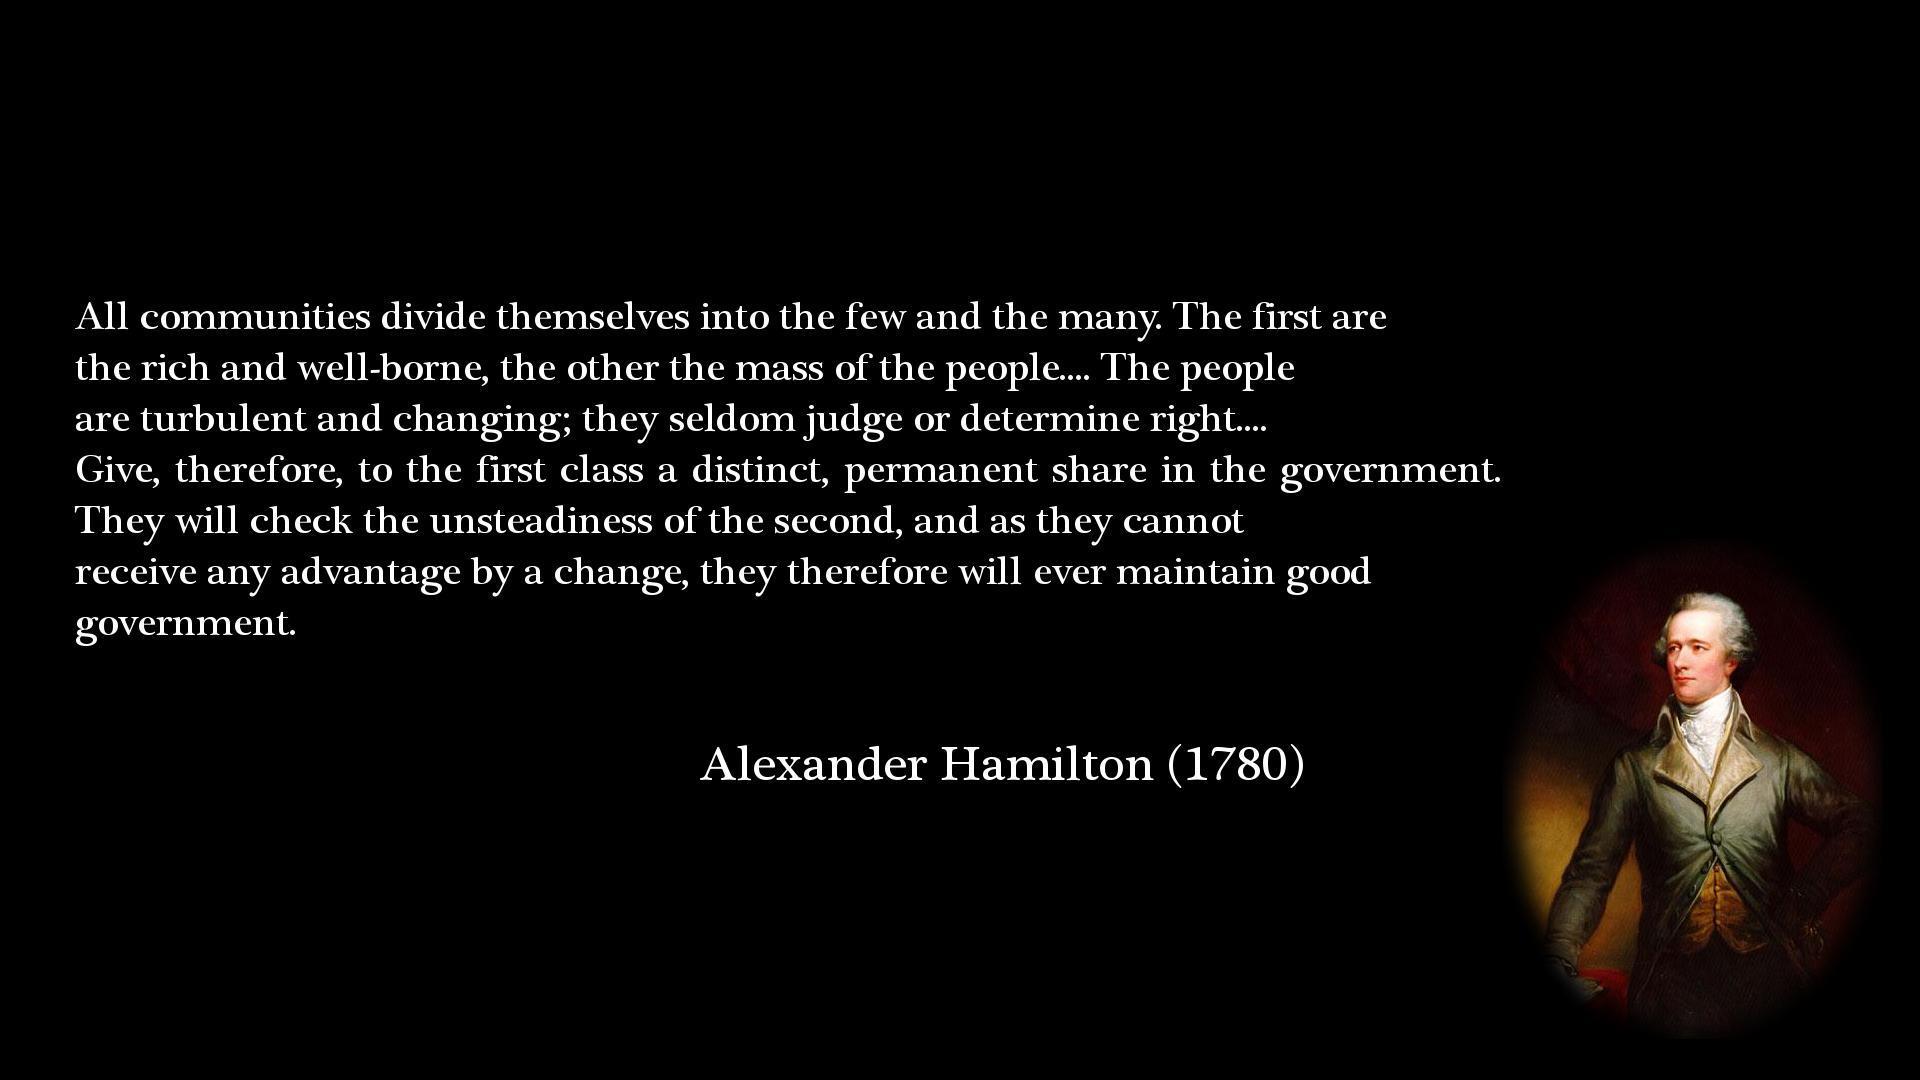 Alexander Hamilton Quotes Wallpaper Image Gallery